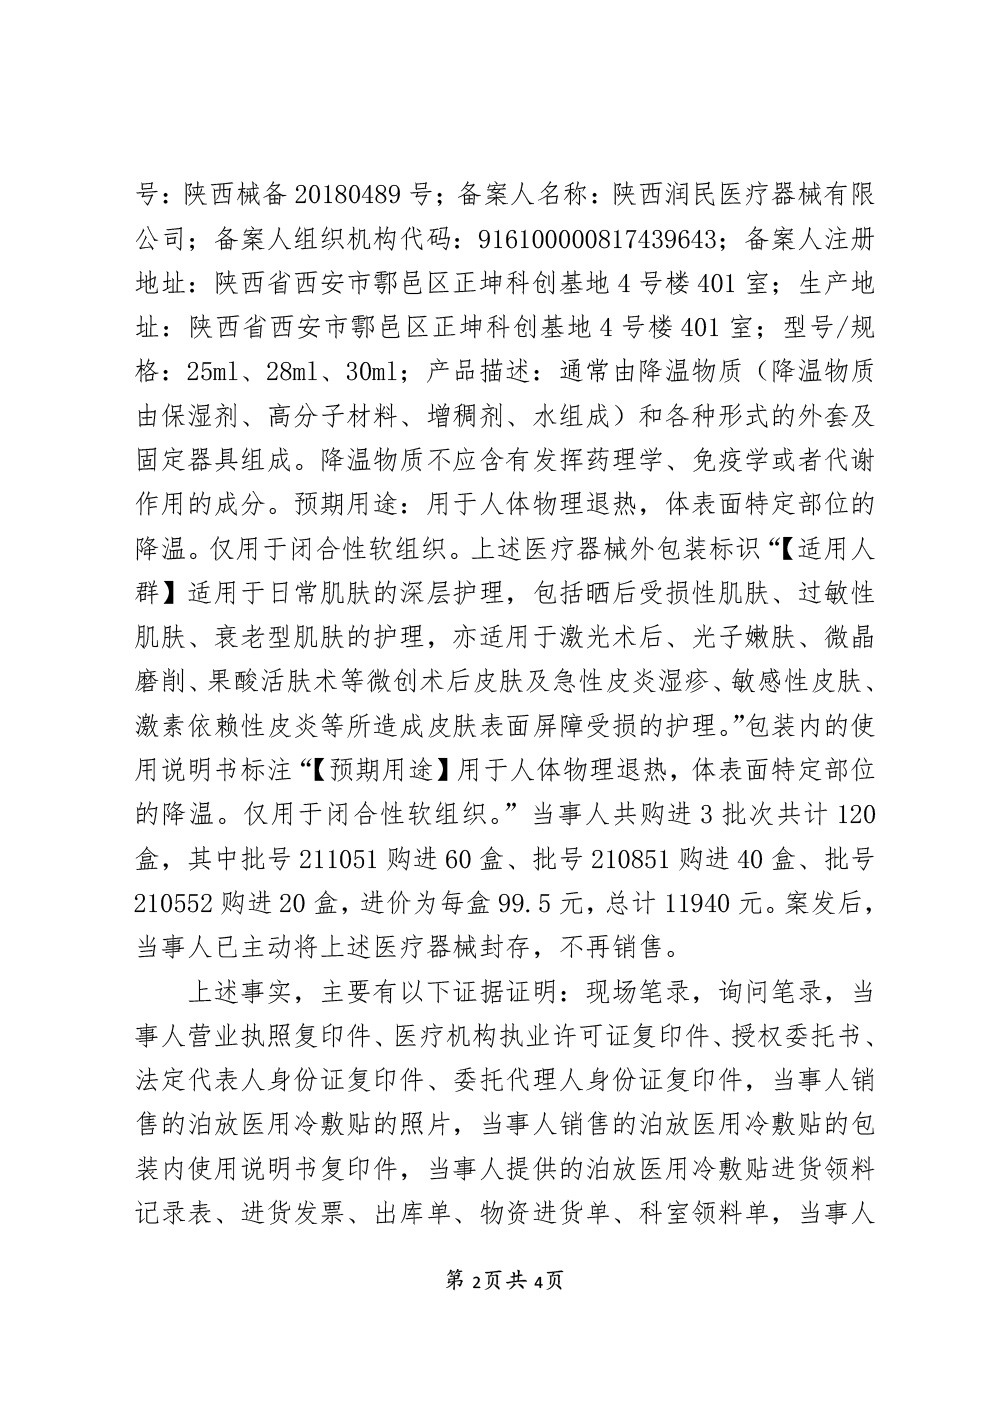 上海玫瑰医疗美容医院有限公司涉嫌经营标签不符合规定的医疗器械案